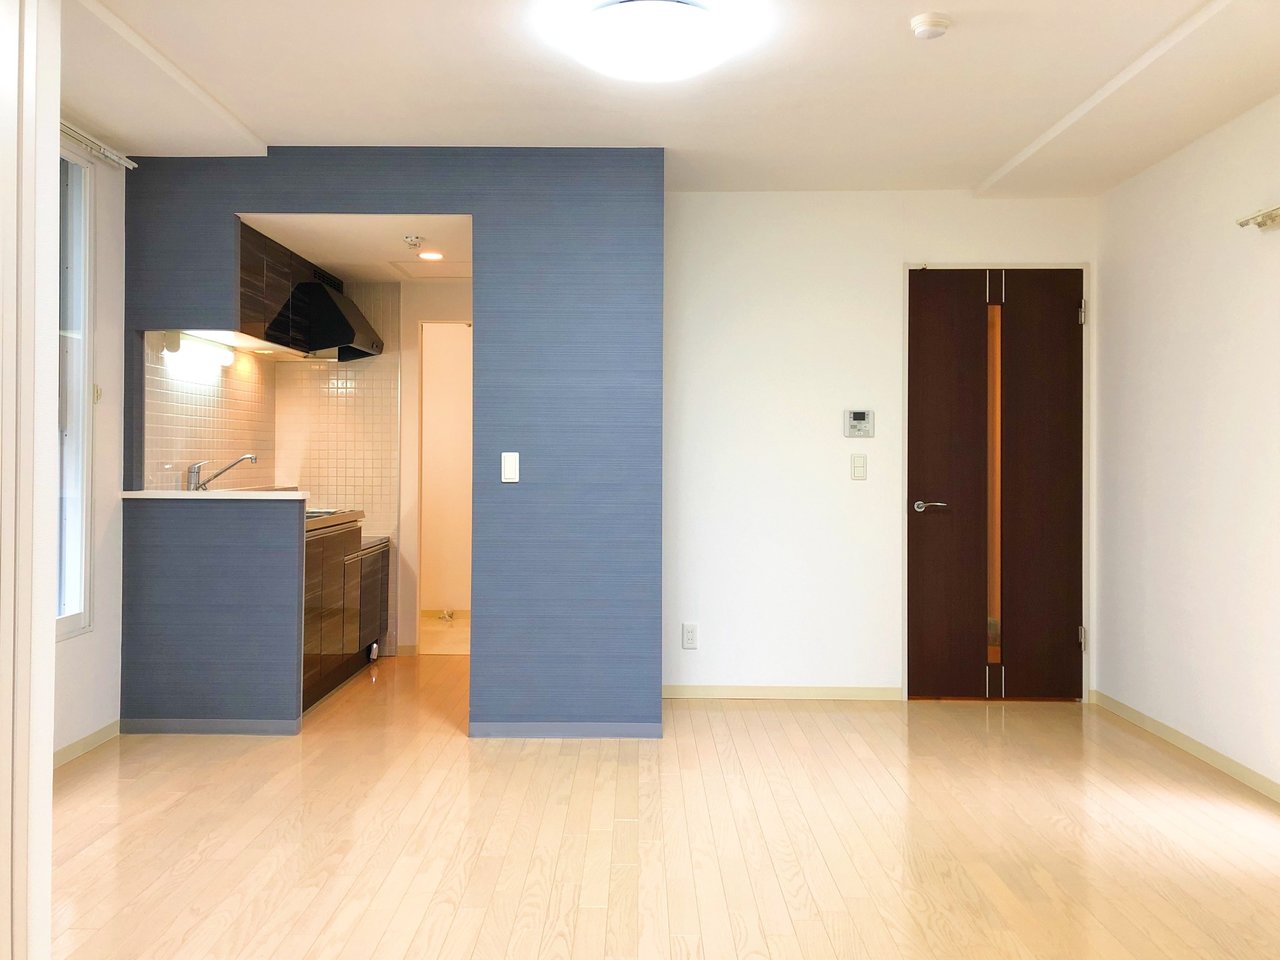 約8畳のリビングと、4.6畳の寝室が、縦に繋がっているタイプの間取り。キッチン横に貼られた淡いブルーのクロスが、お部屋のアクセントになりますね。